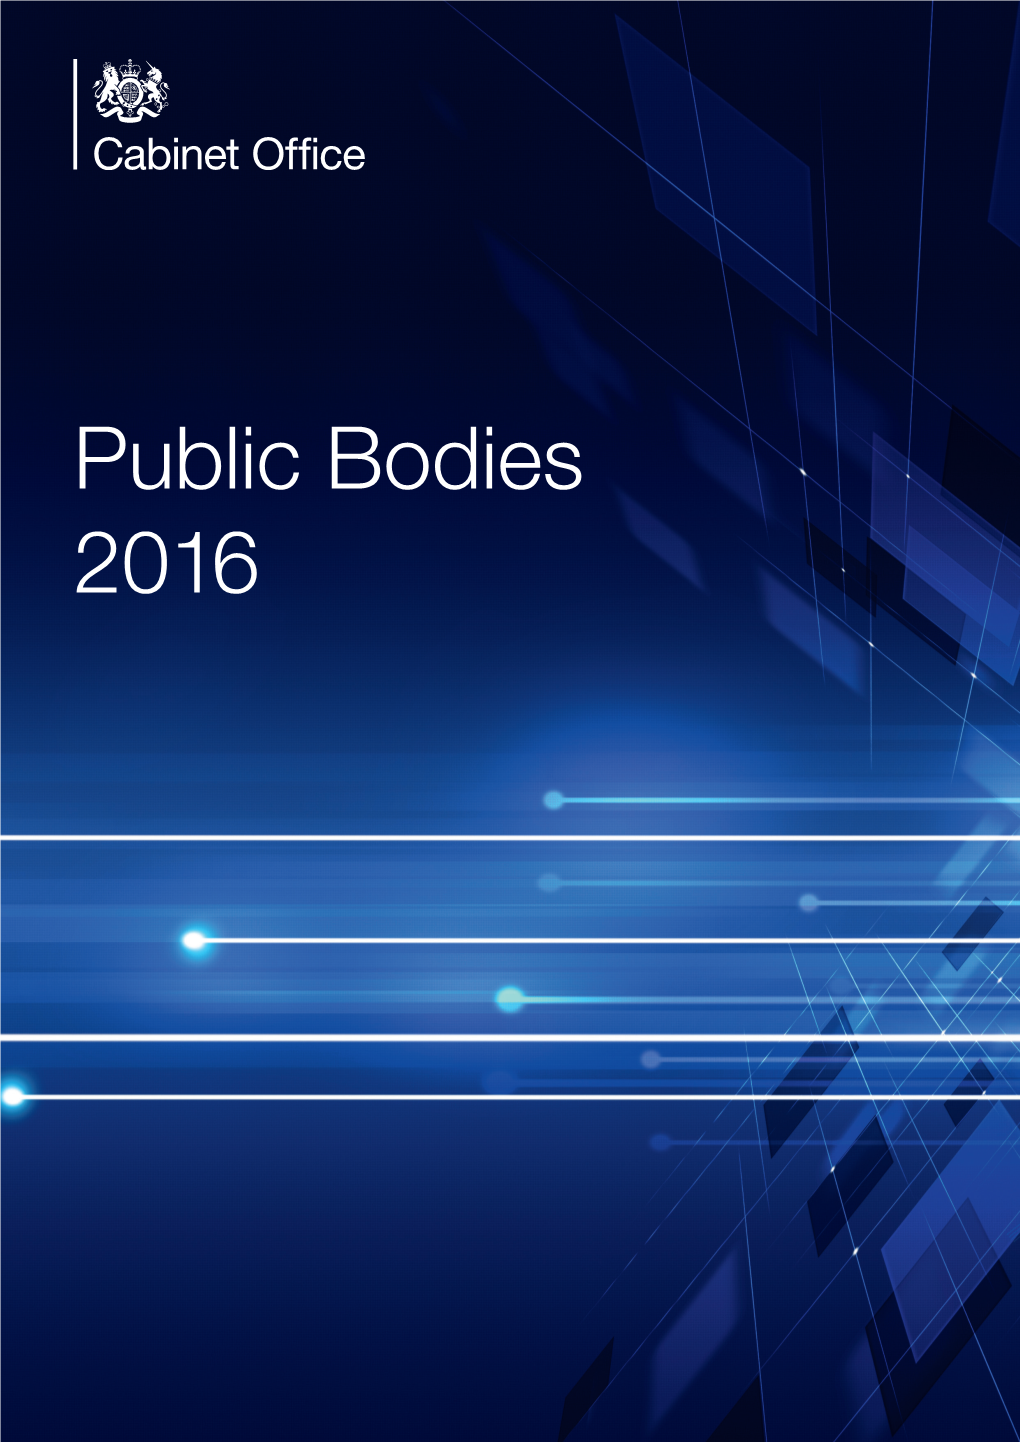 Public Bodies 2016 2 Public Bodies 2016 Contents 3